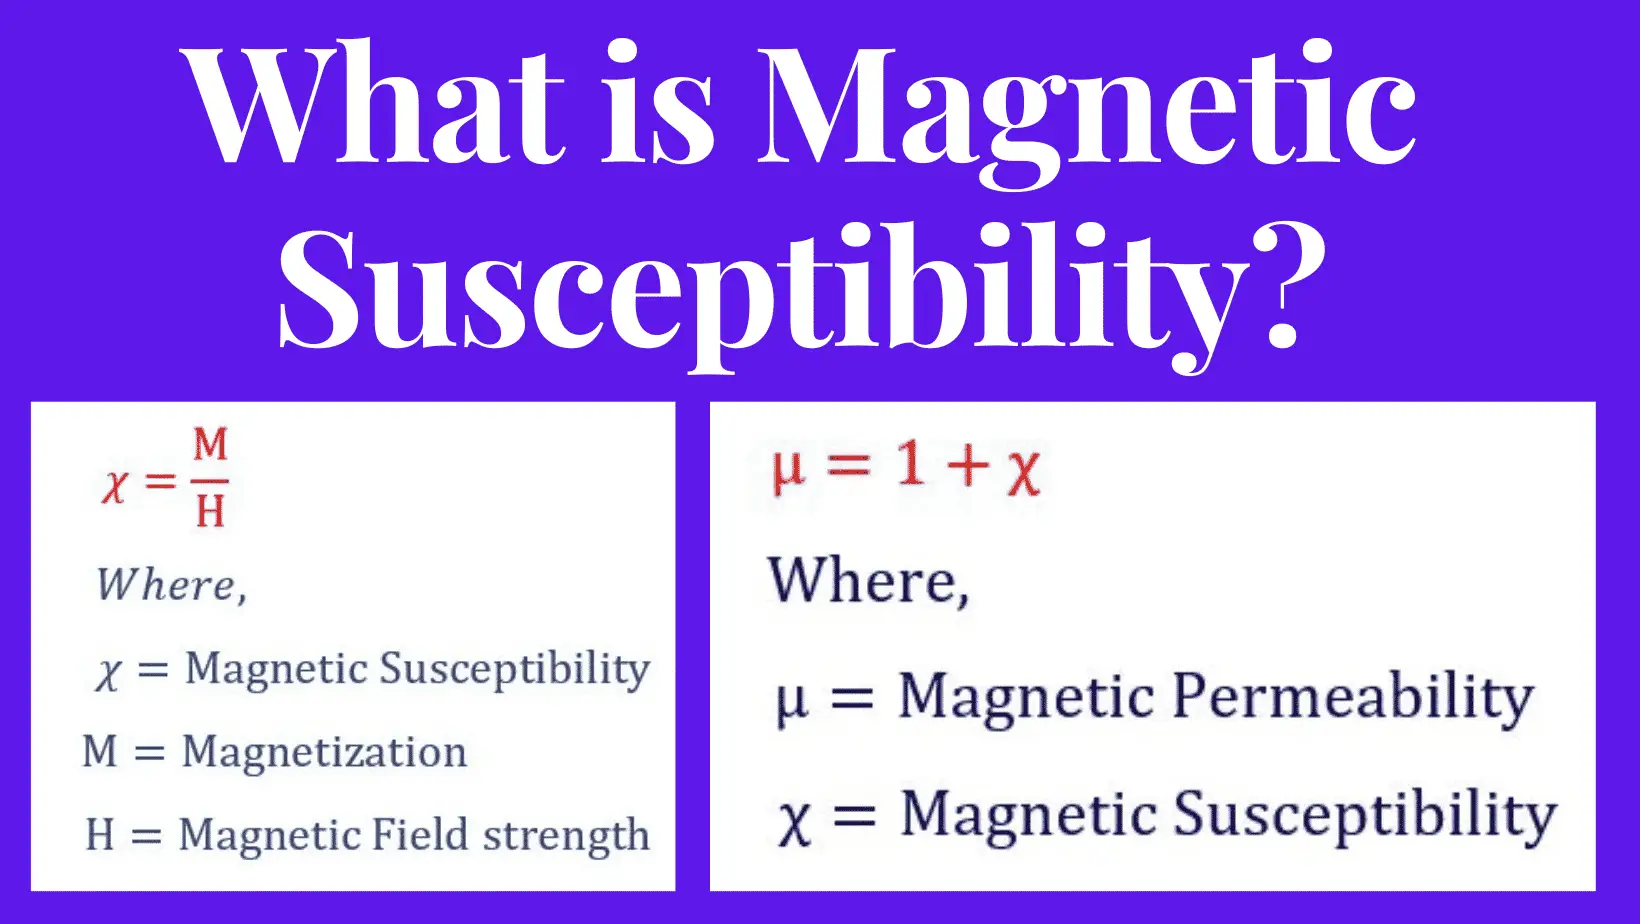 Susceptibilidad magnética: fórmula, definición, unidad